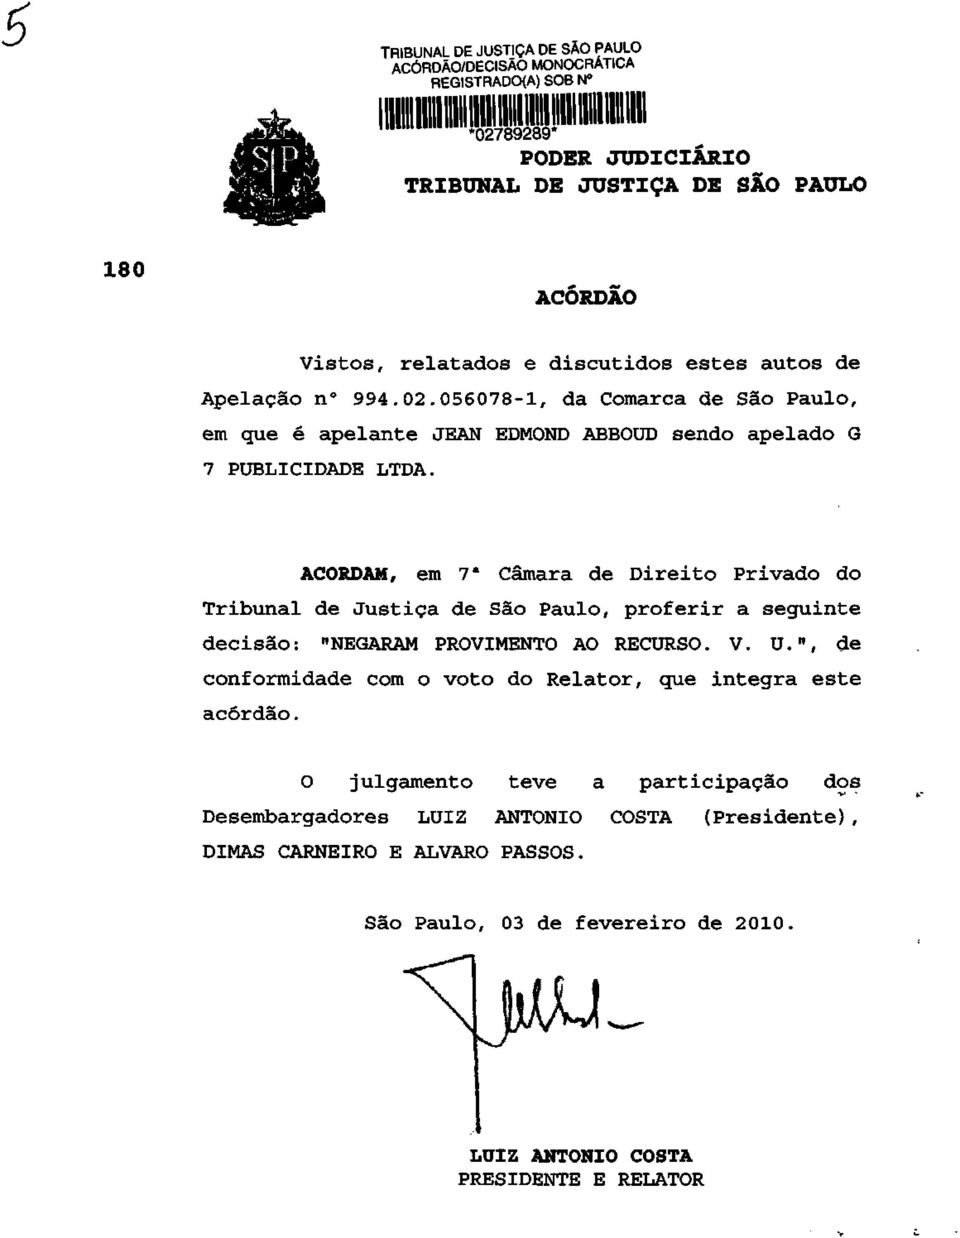 ACORDAM, em 7 a Câmara de Direito Privado do Tribunal de Justiça de São Paulo, proferir a seguinte decisão: "NEGARAM PROVIMENTO AO RECURSO. V. U.